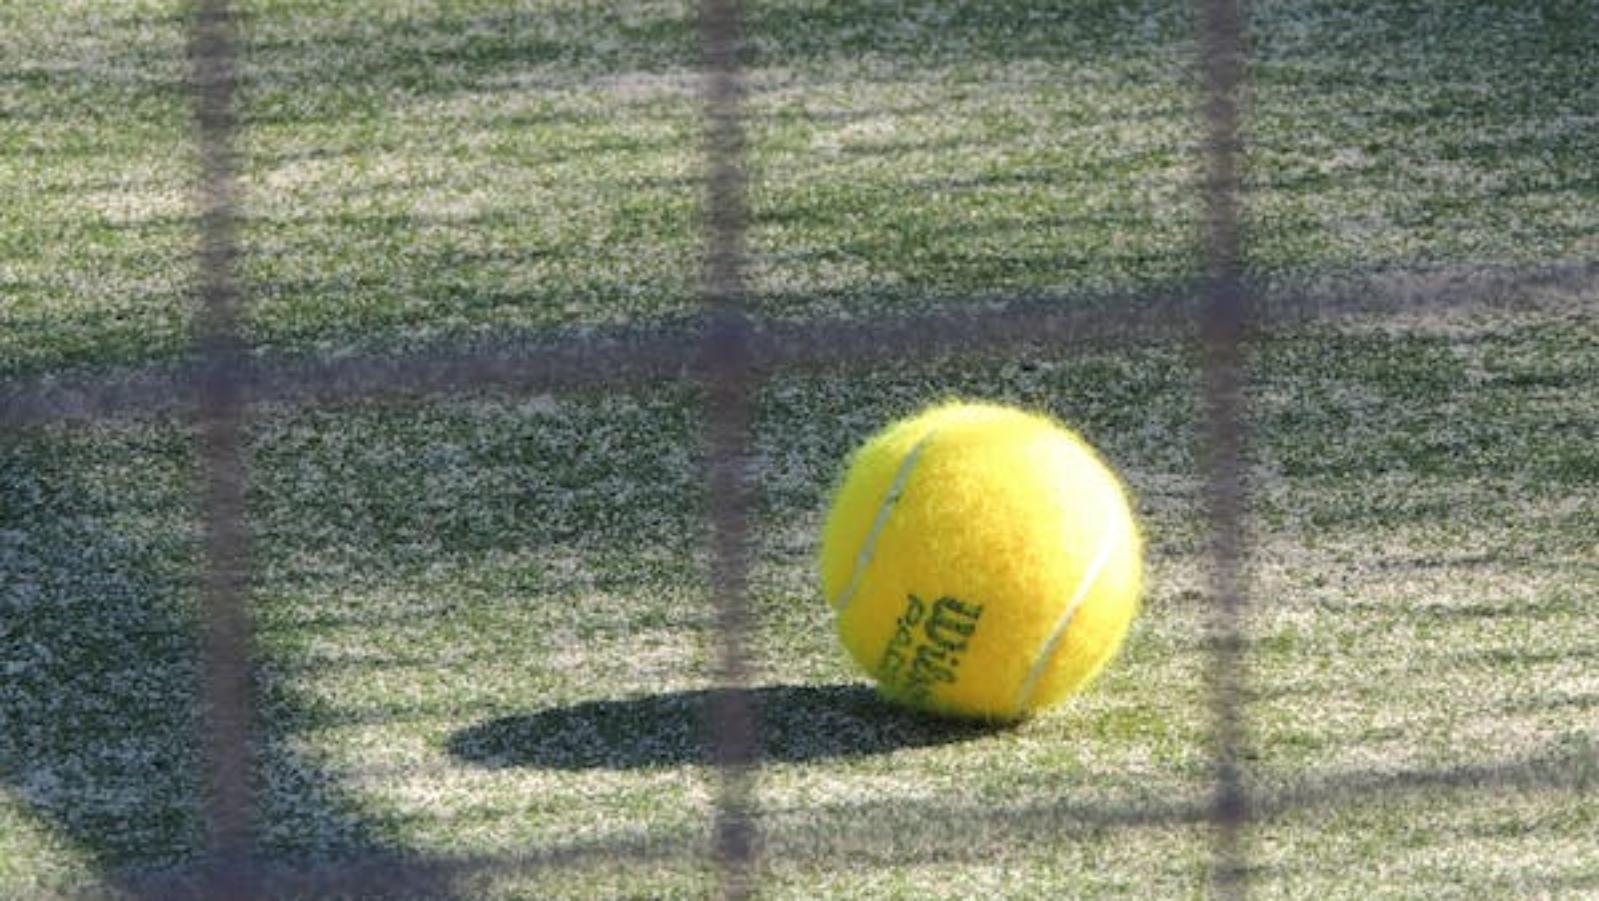 Circolo tennis Granarolo, Granarolo dell’Emilia - foto generica via Pexels